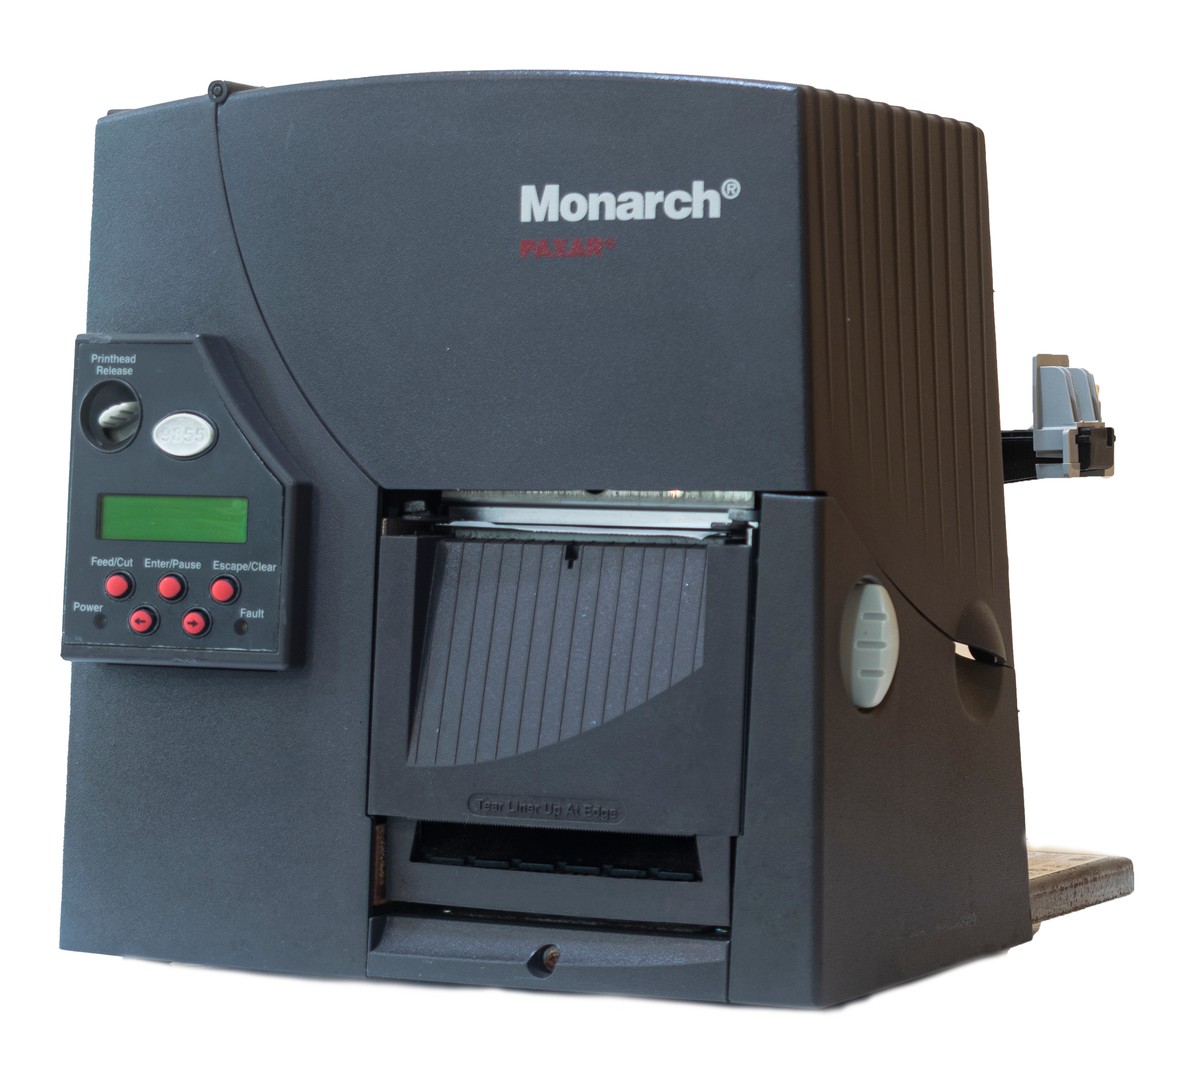 impresoras y scanners - Impresora de etiqueta Monarch 9855